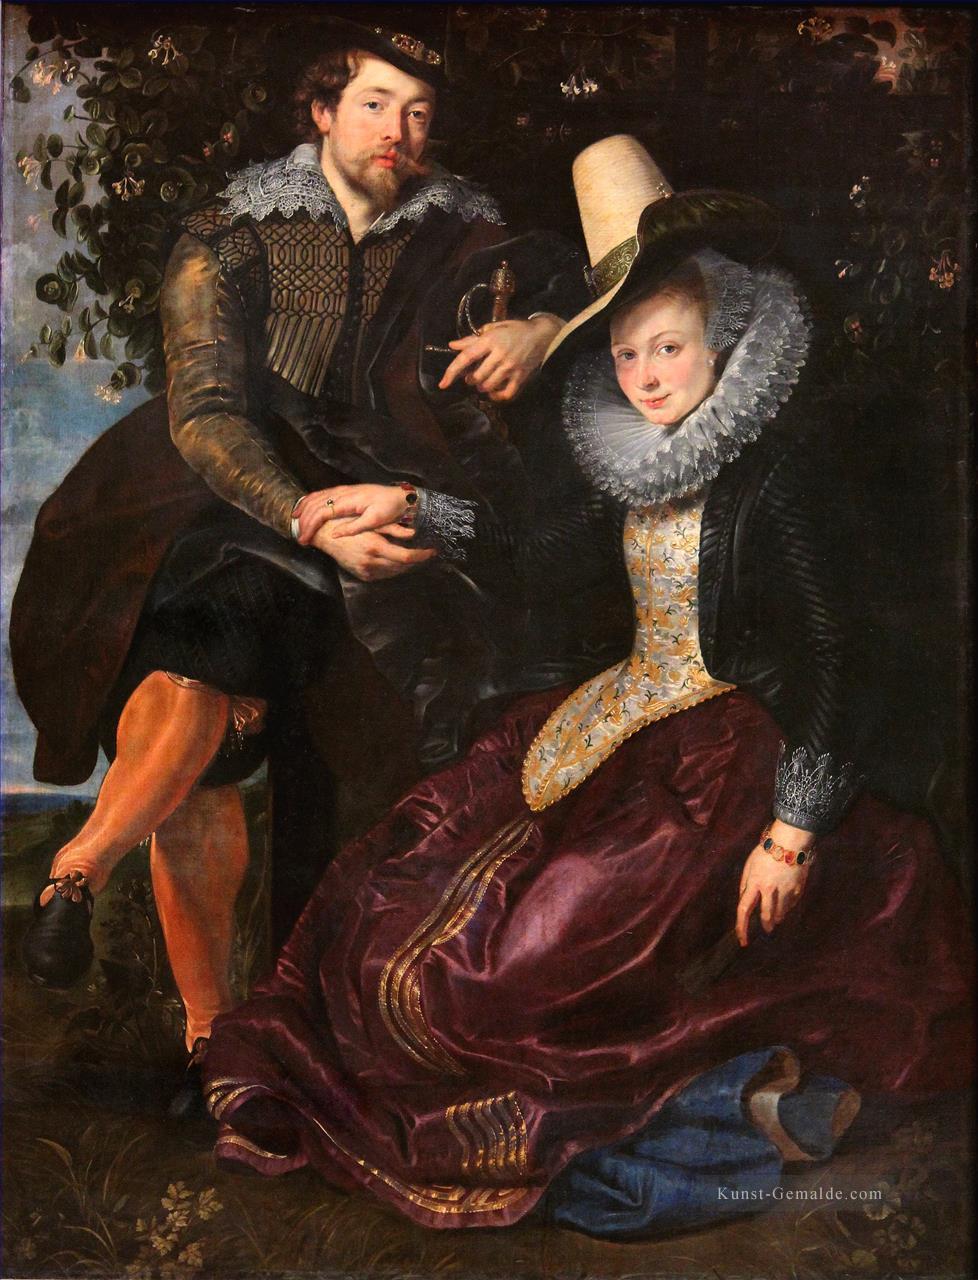 Der Künstler und seine erste Frau Isabella Brant in der Geißblattlaube Barock Rubens Ölgemälde